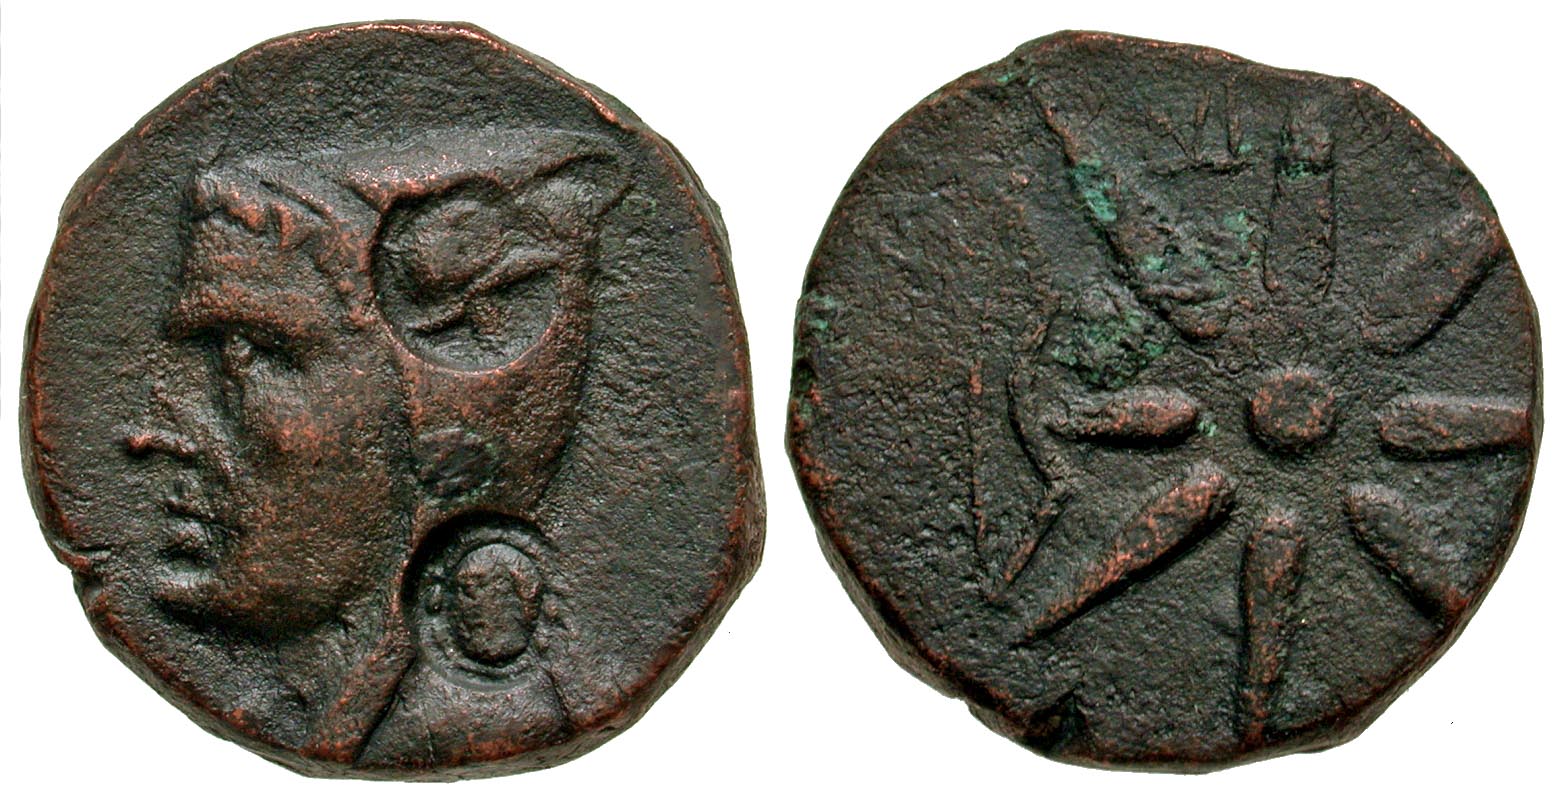 Pontic Kingdom, Uncertain. civic issue, time of Mithridates VI. ca. 130-100 B.C. AE 27. Rare.